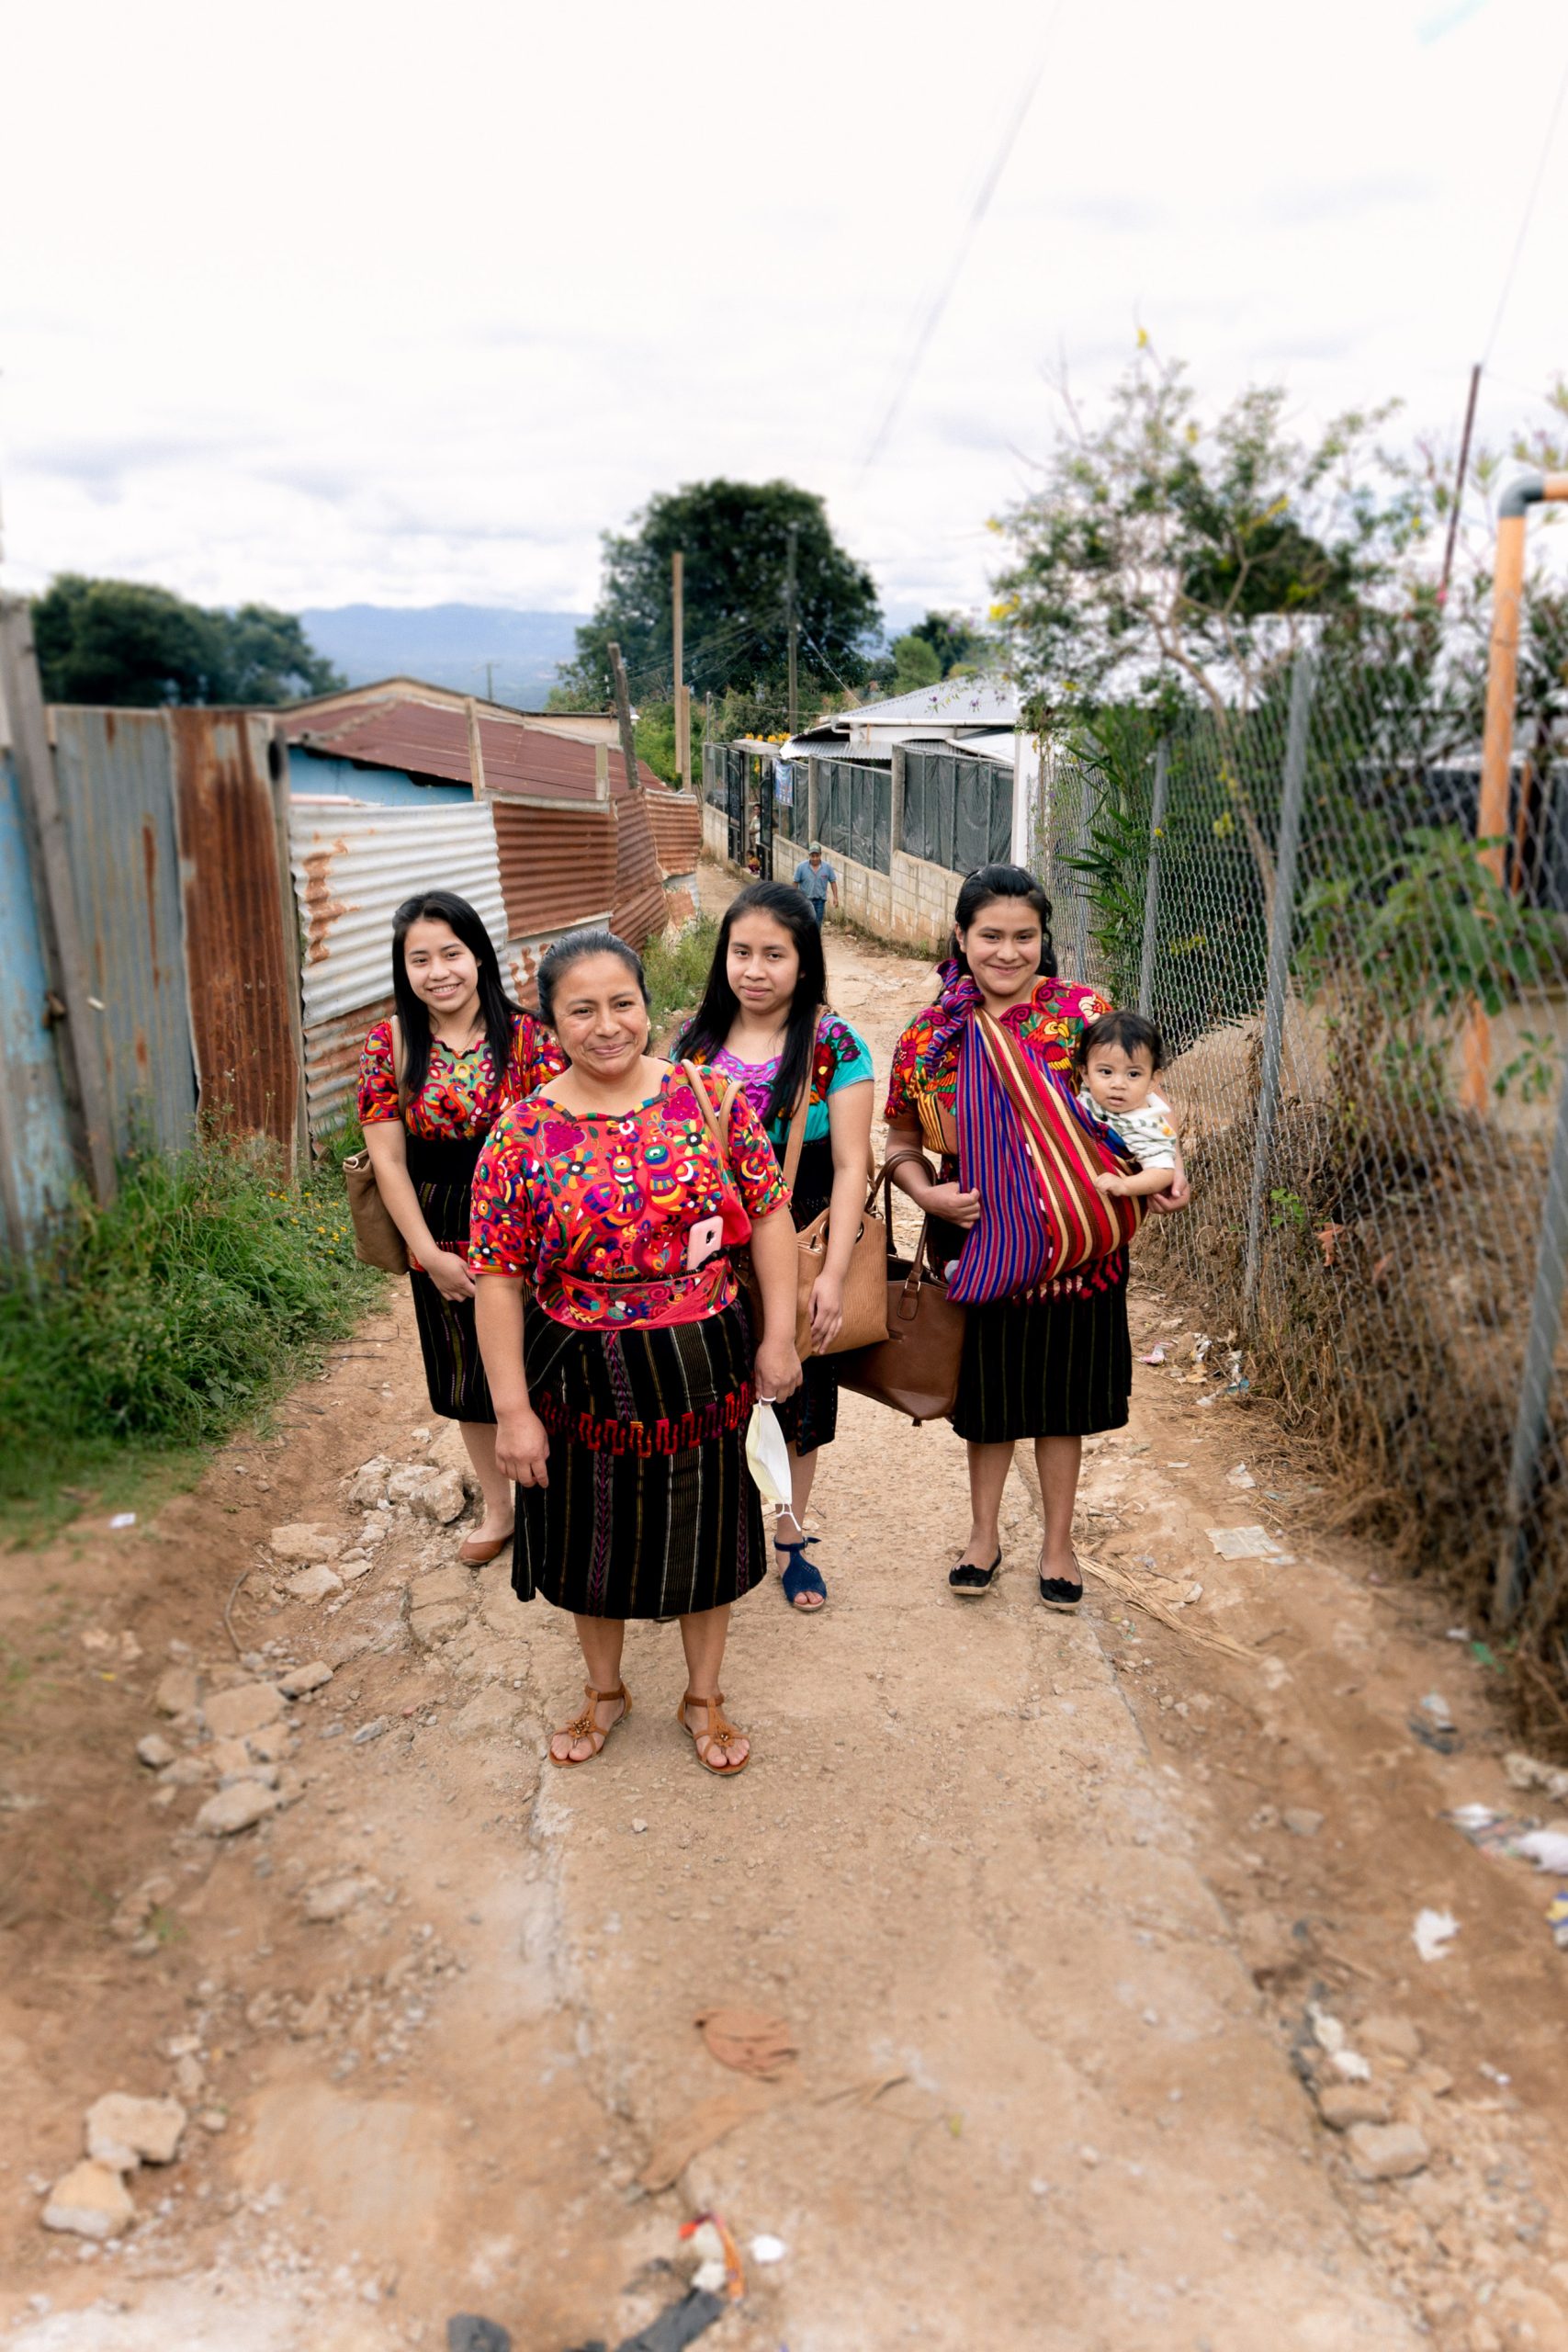 Proyecto Sustentable con Guatemala